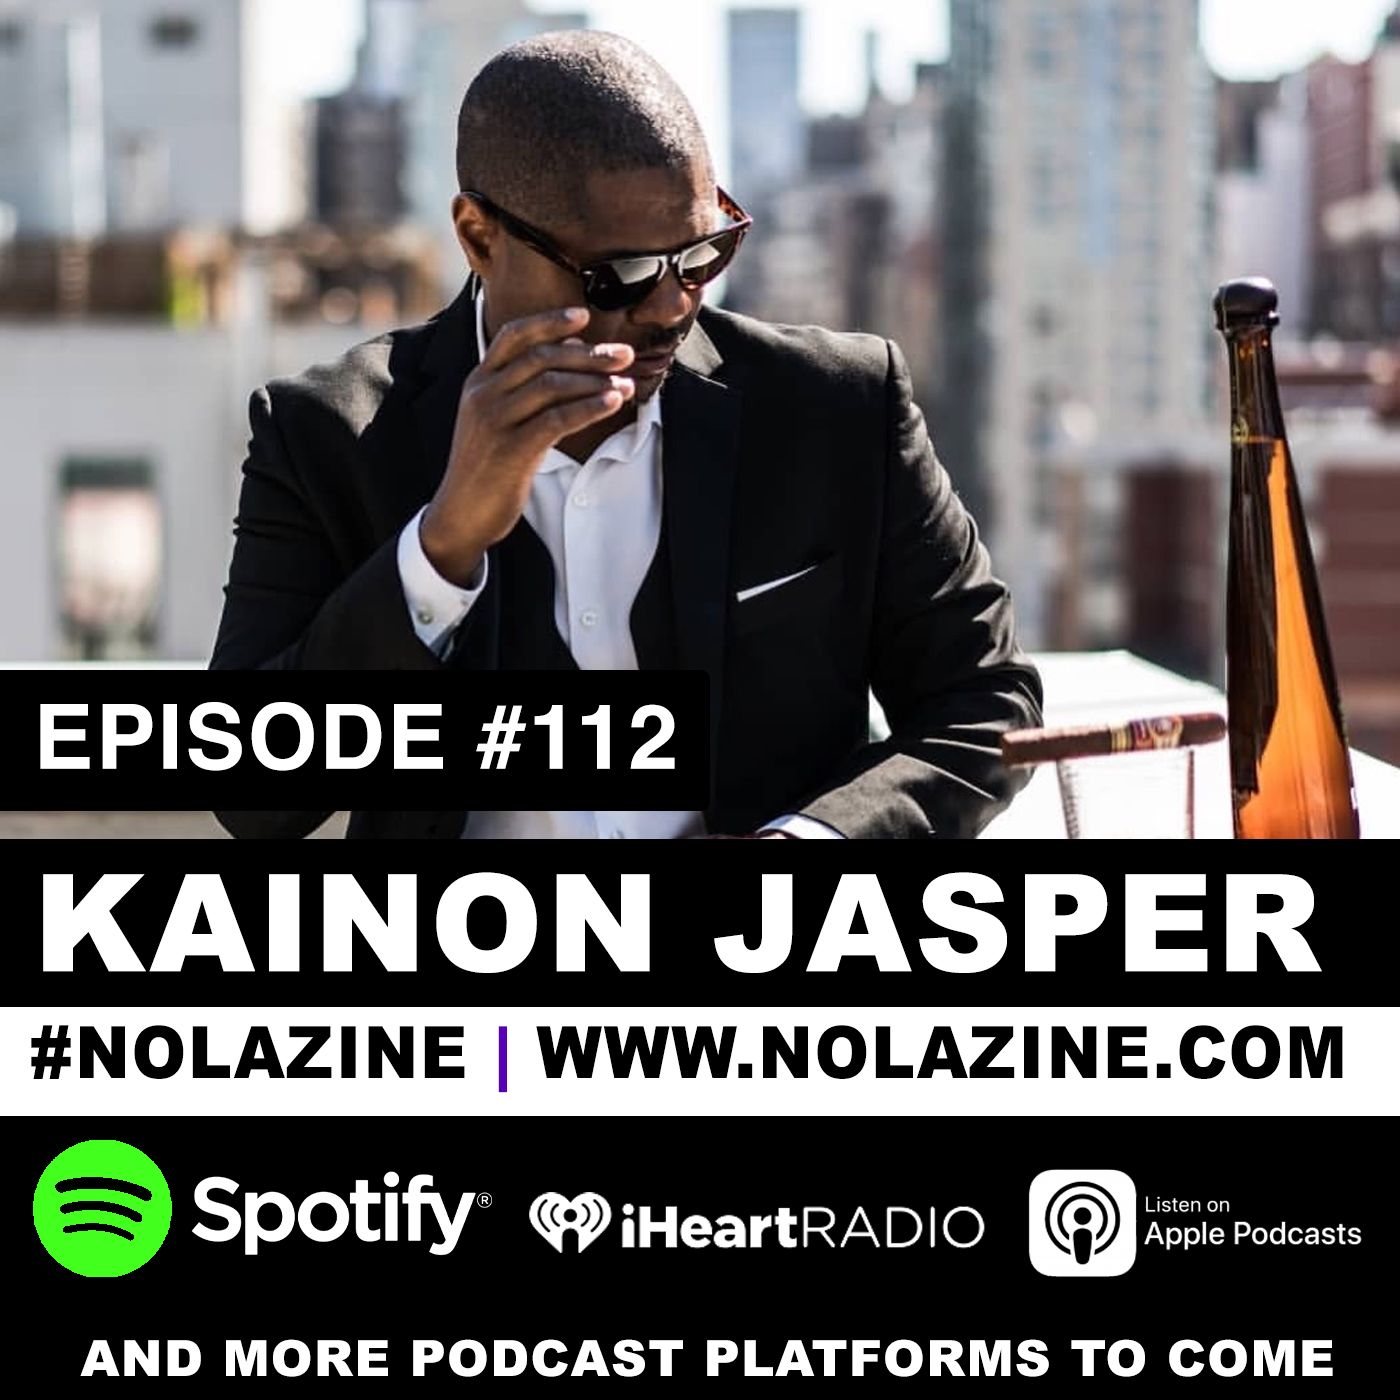 EP: 112 Featuring Kainon Jasper